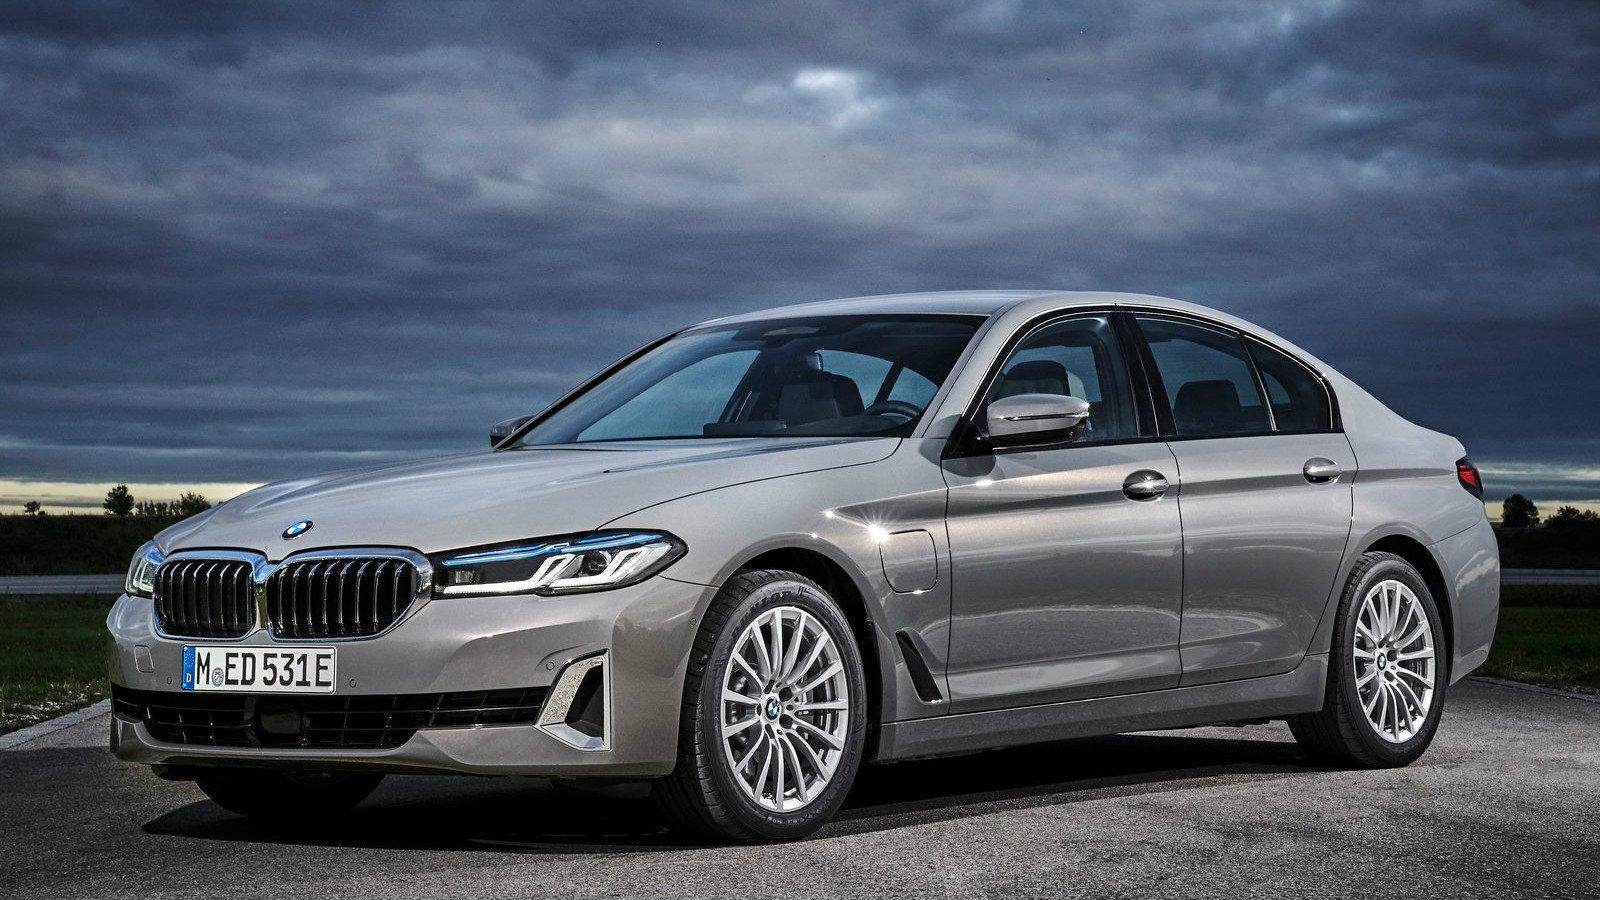 Τέλος εποχής στην BMW: Σταματά η παραγωγή κινητήρων καύσης στο Μόναχο 